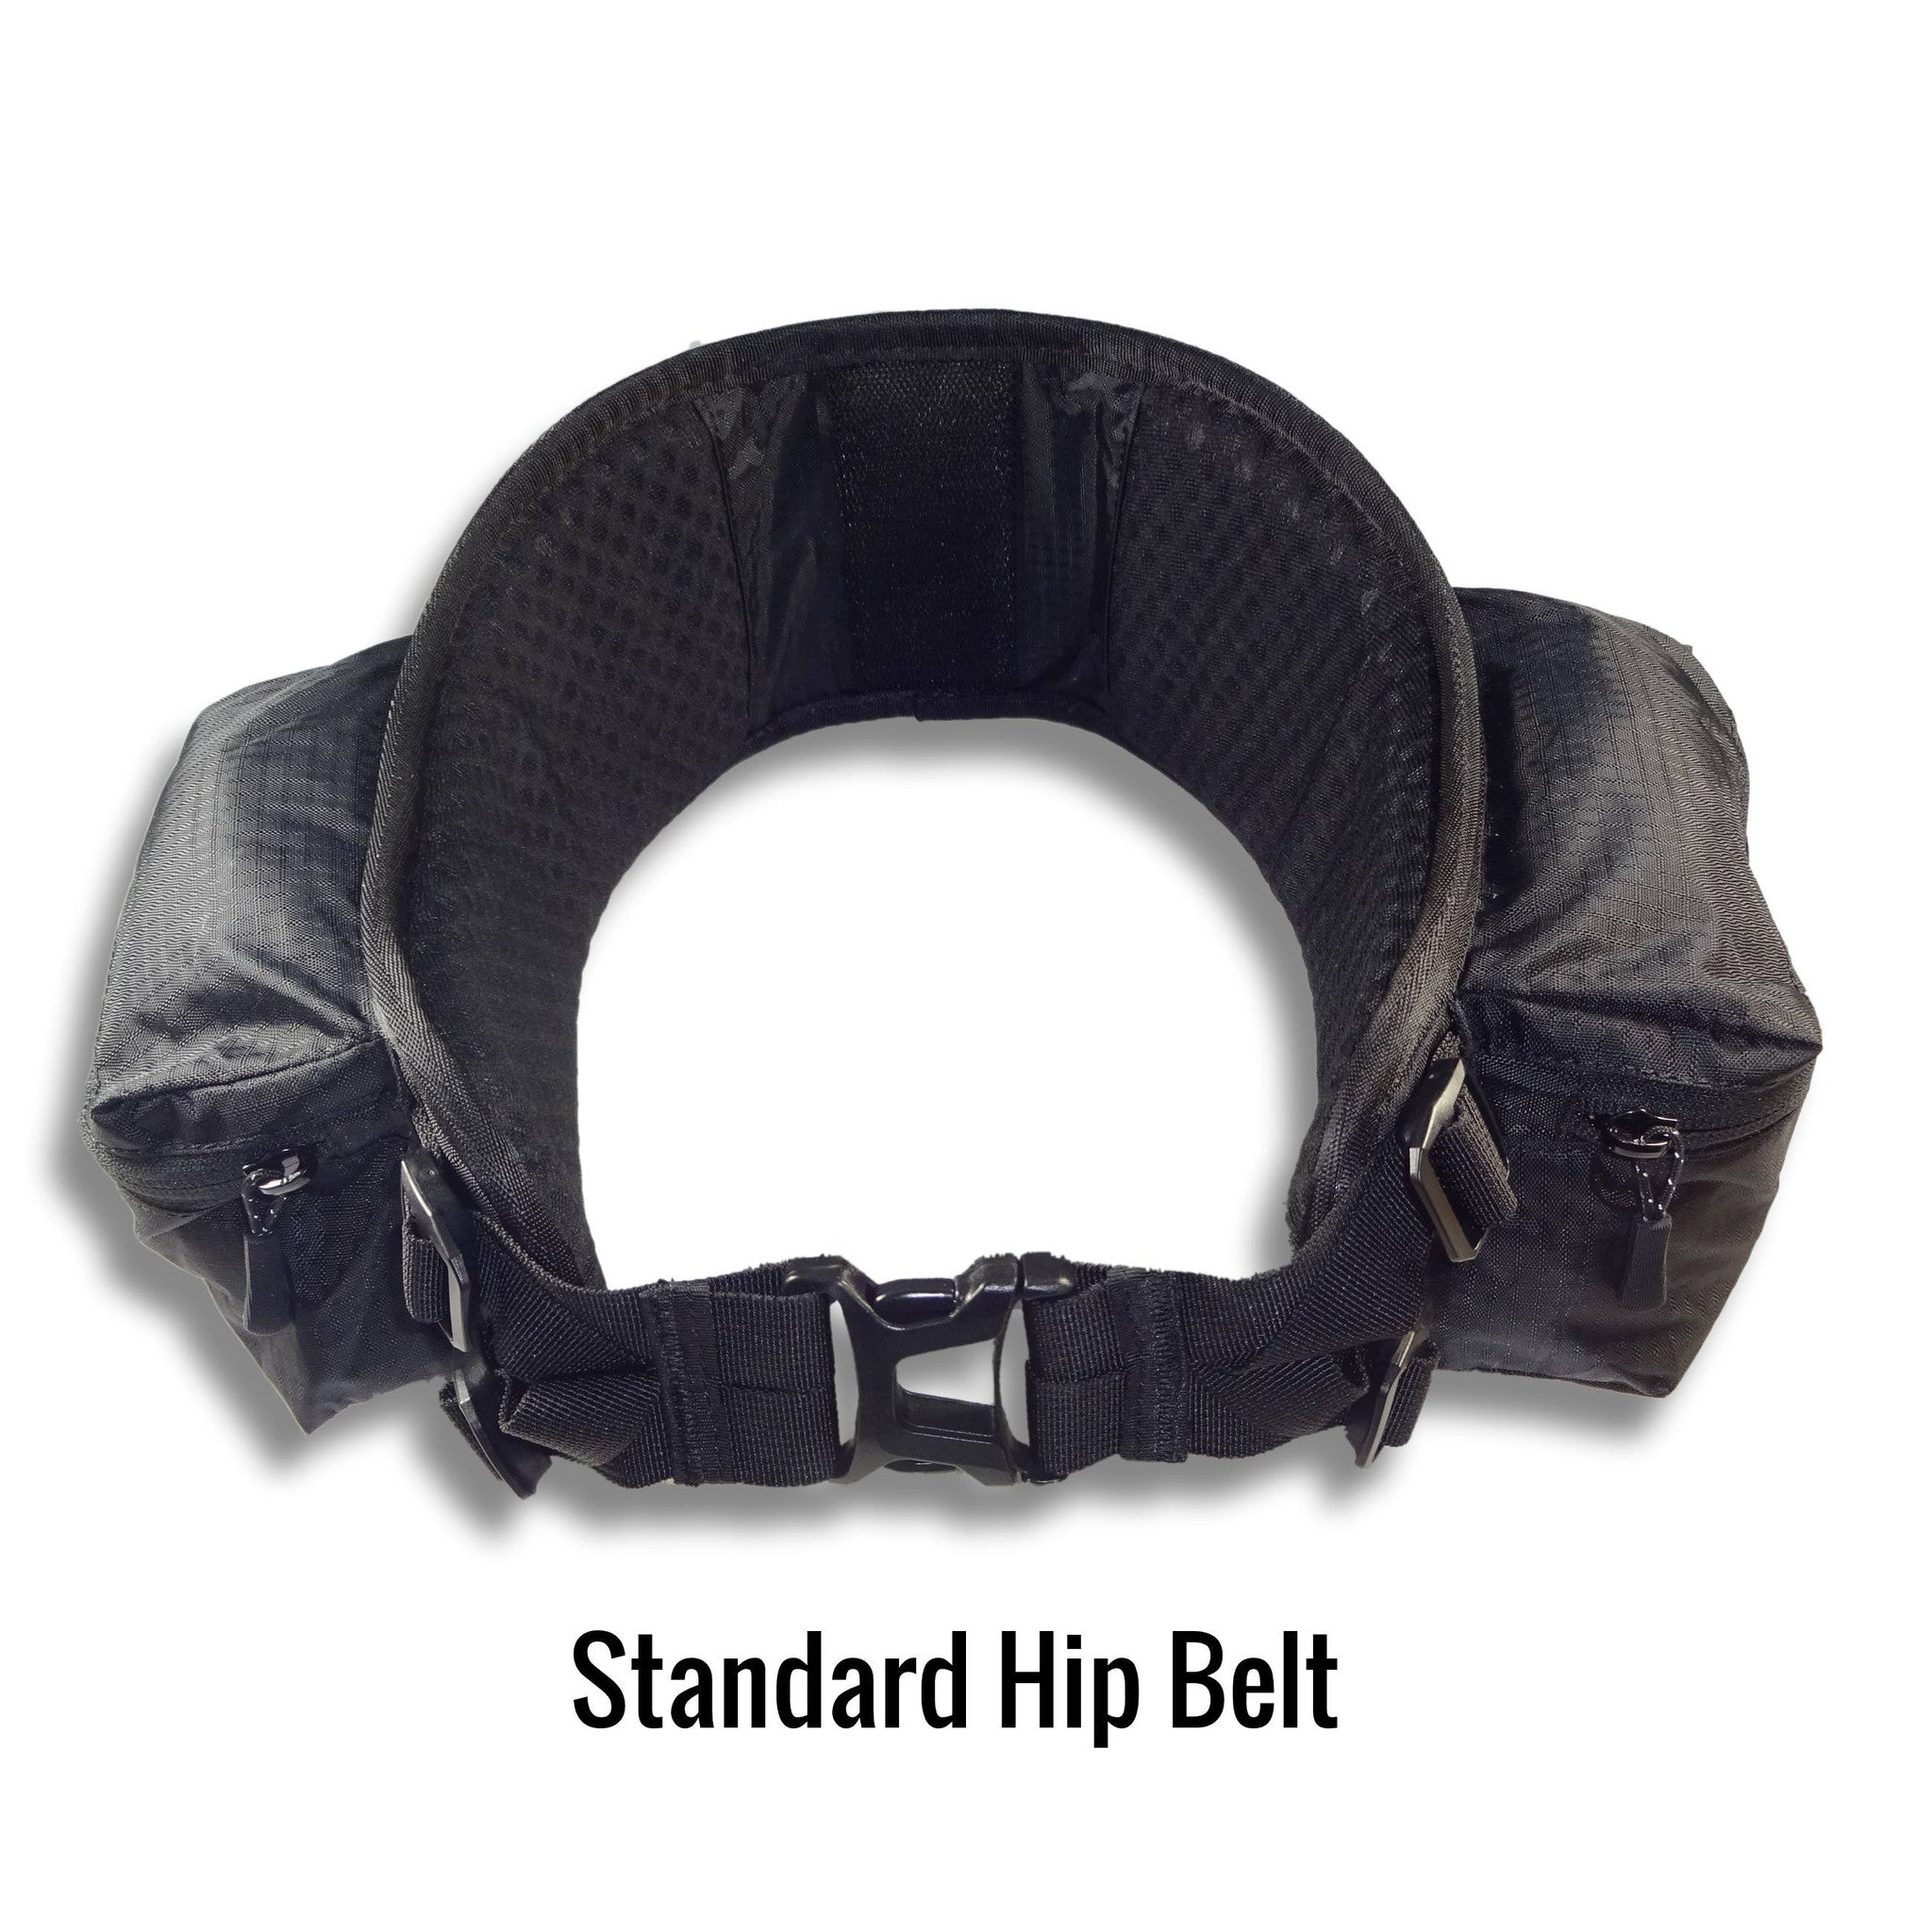 Standard Hip Belt with large pockets